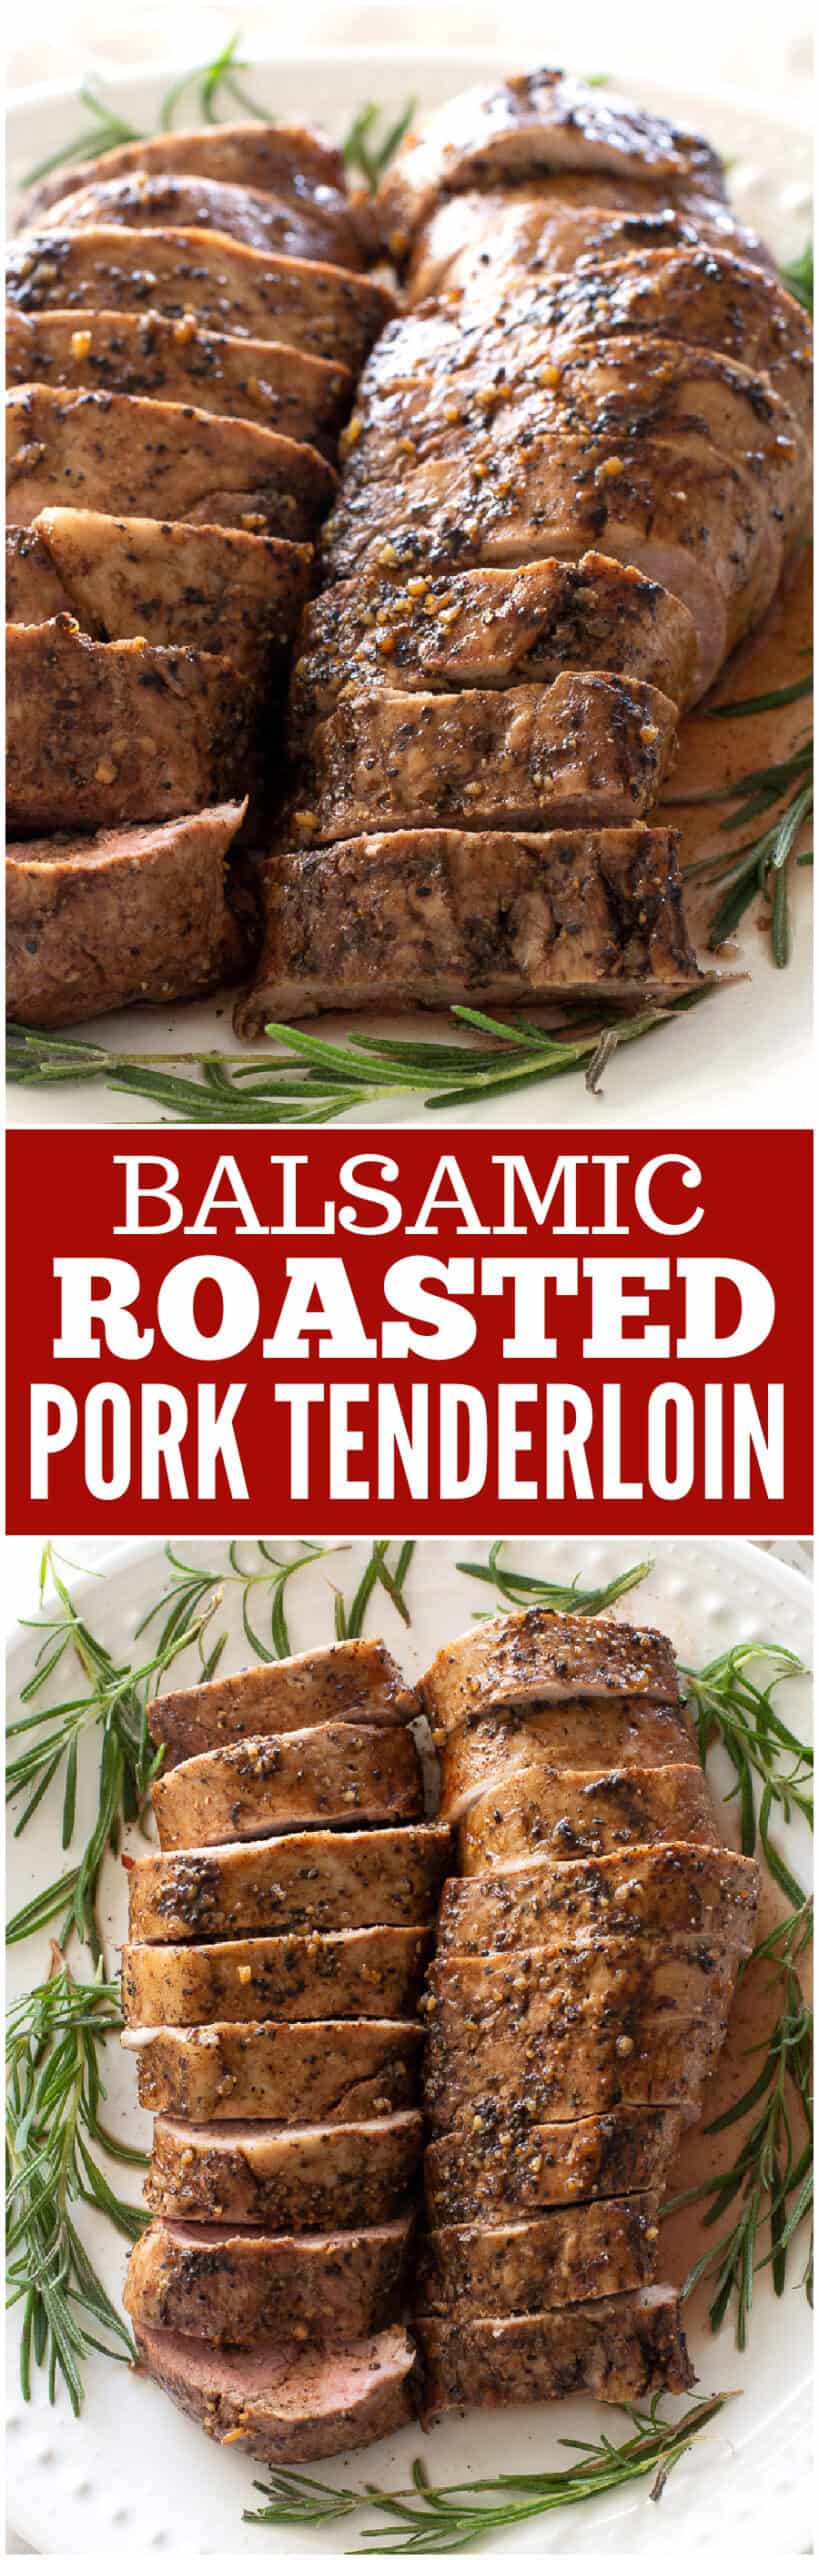 balsamic roasted pork tenderloin scaled - Balsamic Roasted Pork Tenderloin